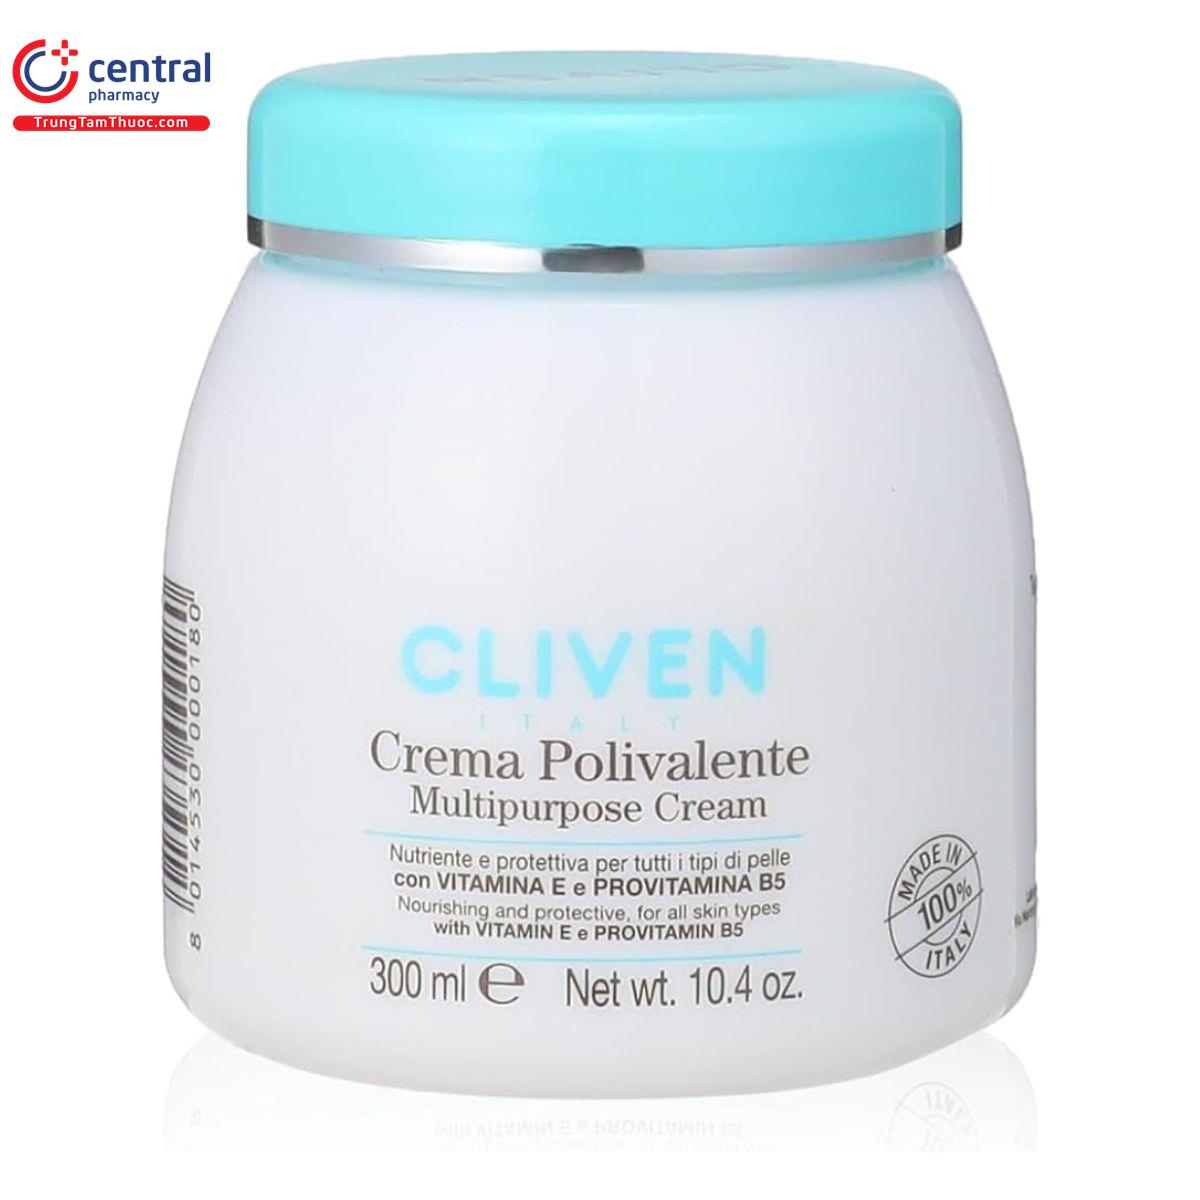 cliven crema polivalente multipurpose cream 6 T8157